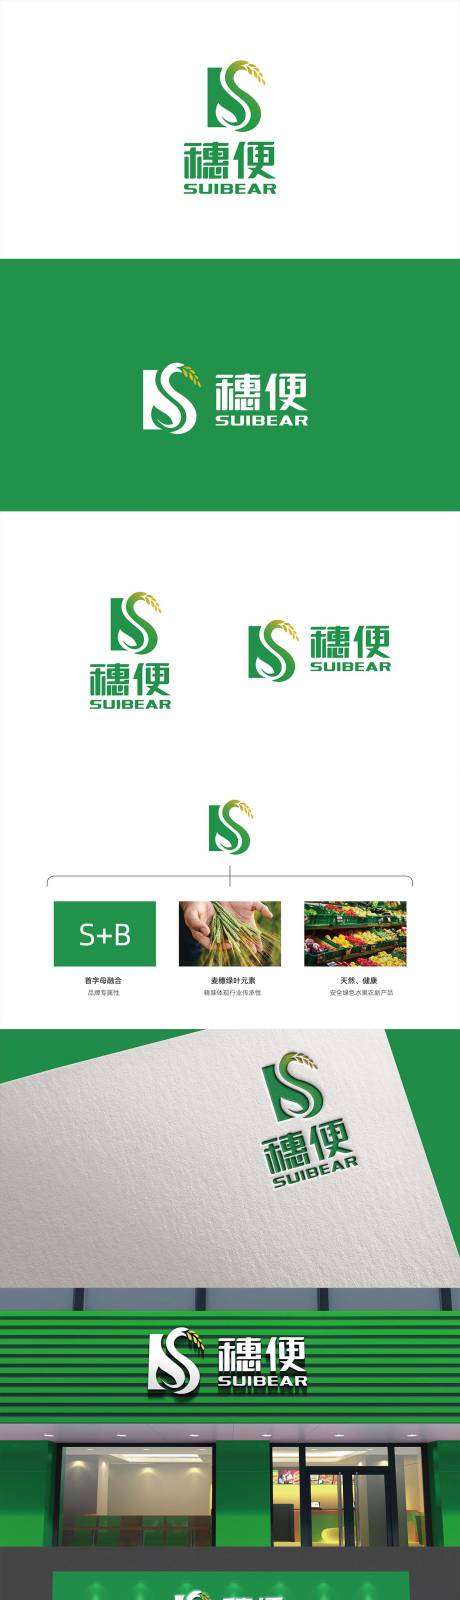 农业果蔬便利店logo